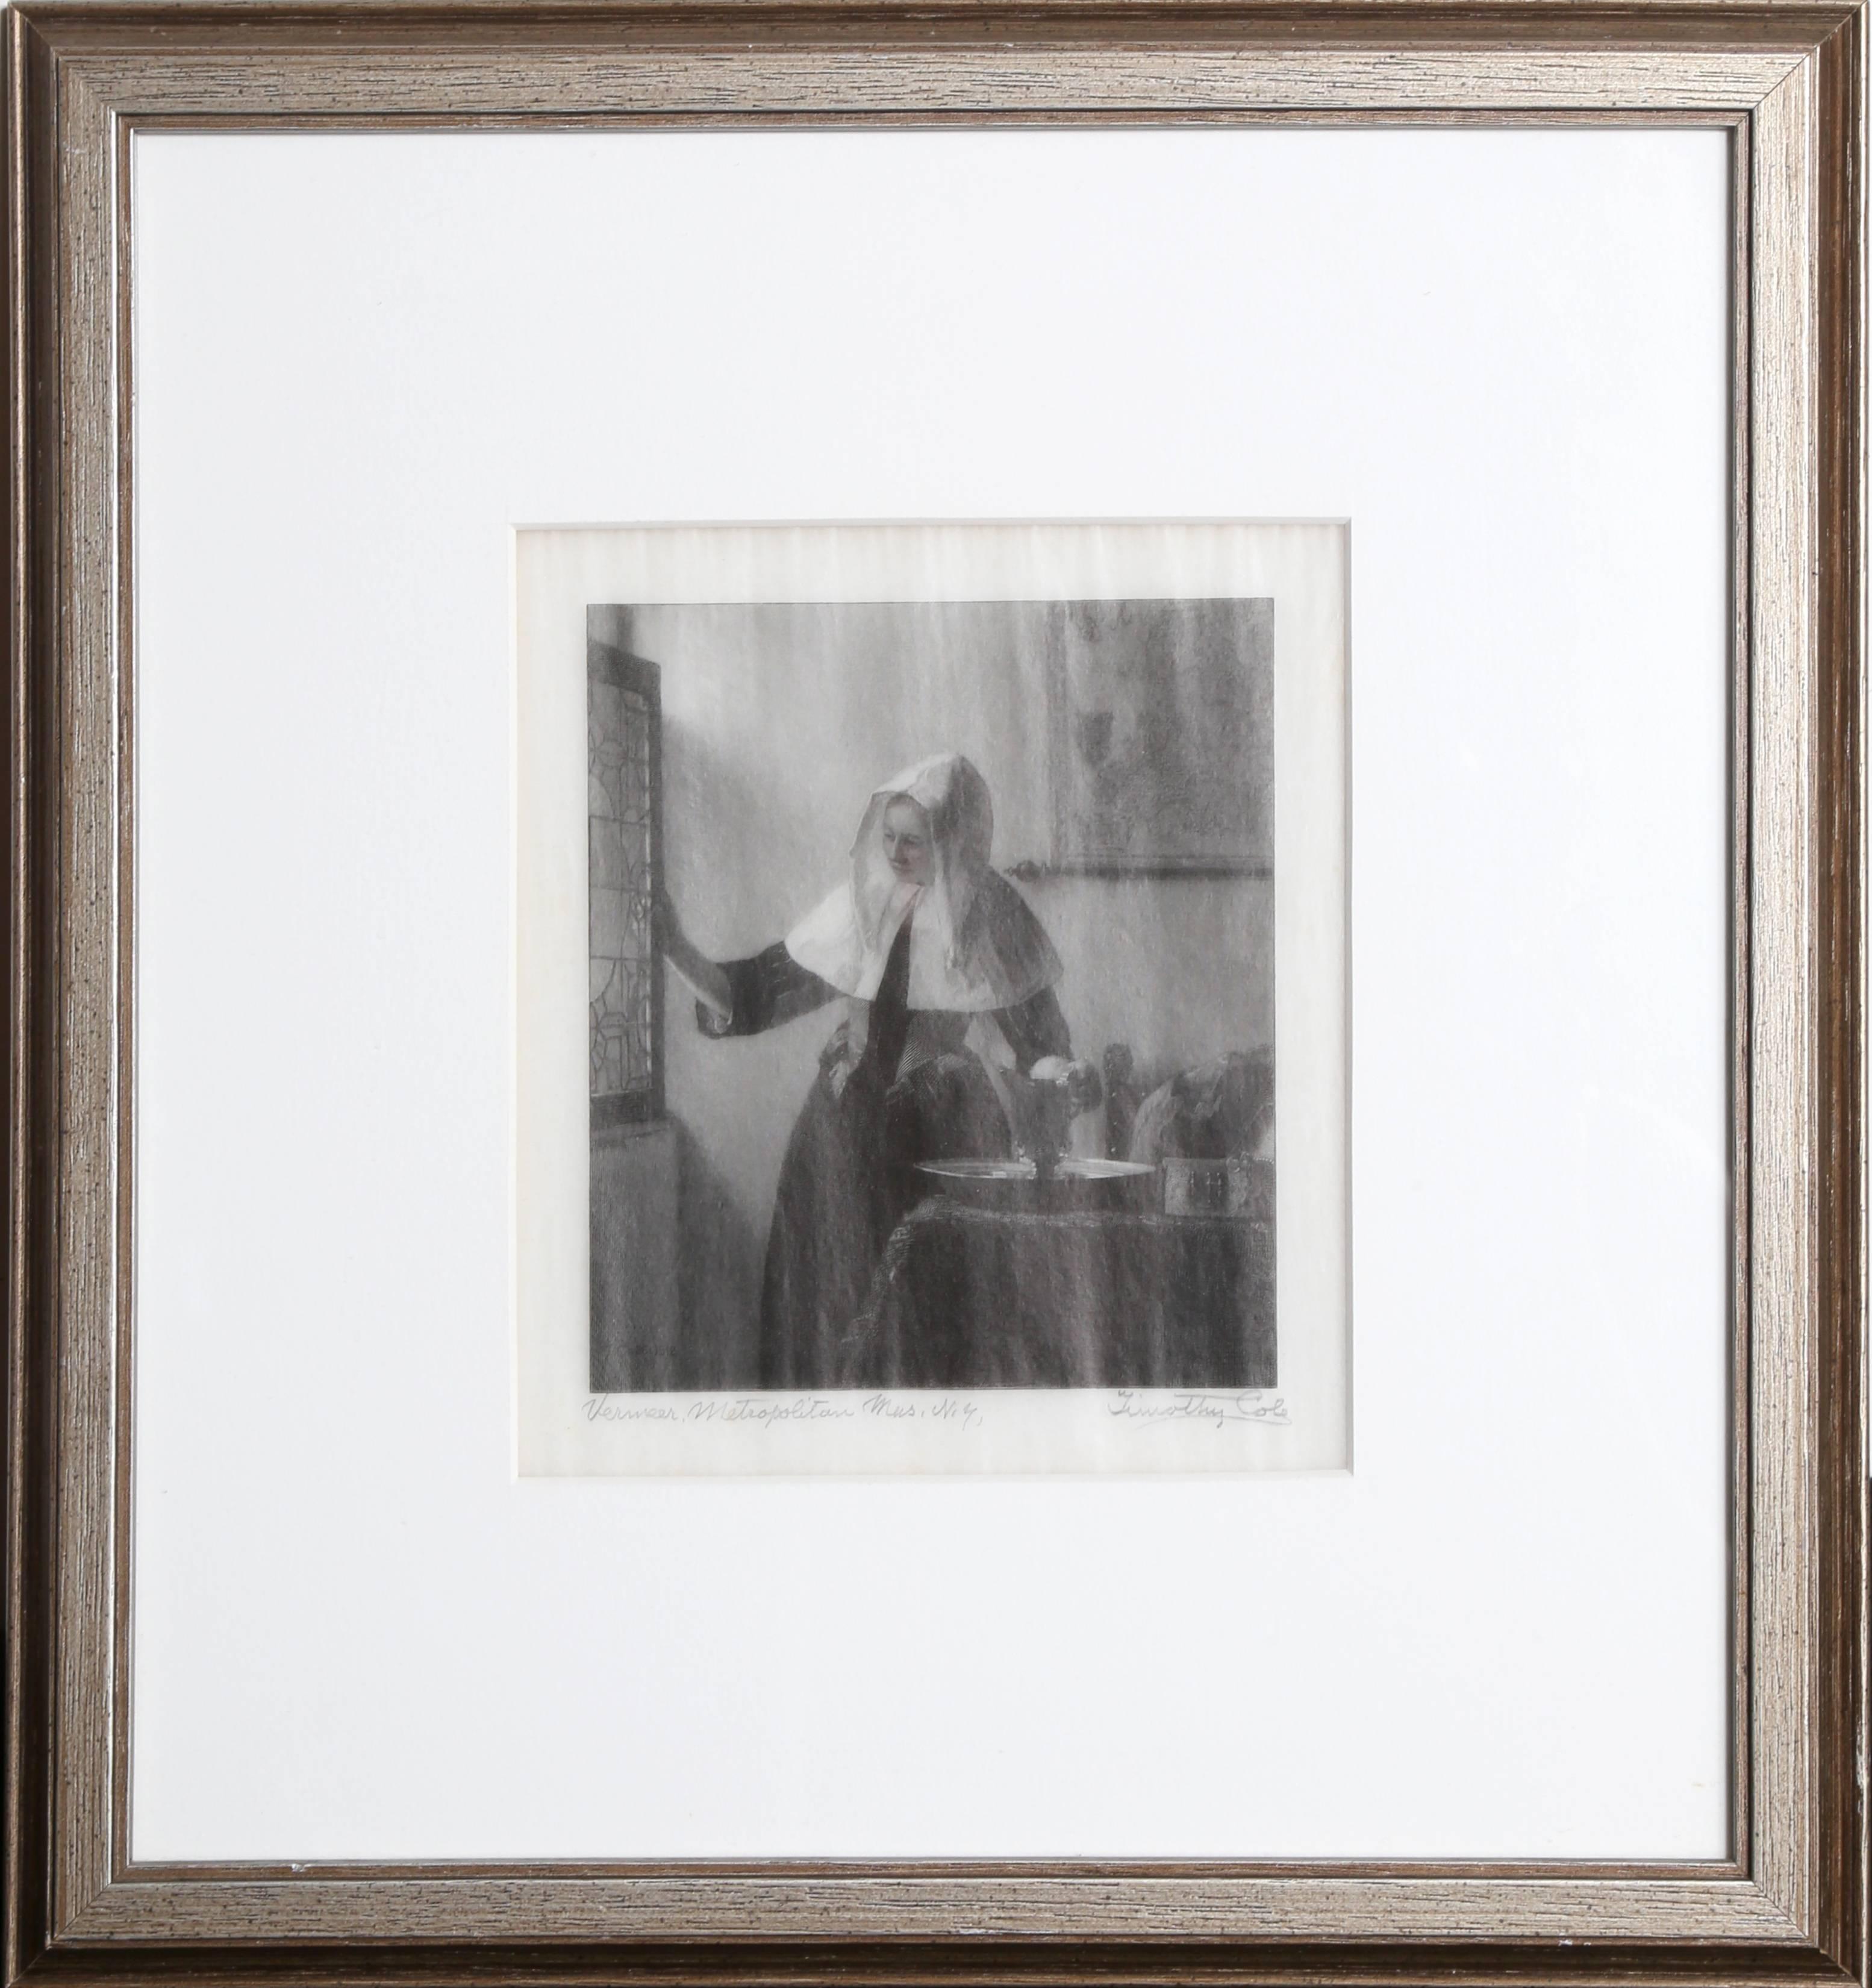 Artiste : Timothy Cole d'après Johannes Vermeer
Titre : Femme avec une cruche d'eau
Année : 1912
Médium : Photolithographie, signée au crayon, marquée Vermeer, Metropolitan Mus. NY
Taille de l'image : 6 x 5 pouces
Taille du cadre : 15 x 14 pouces